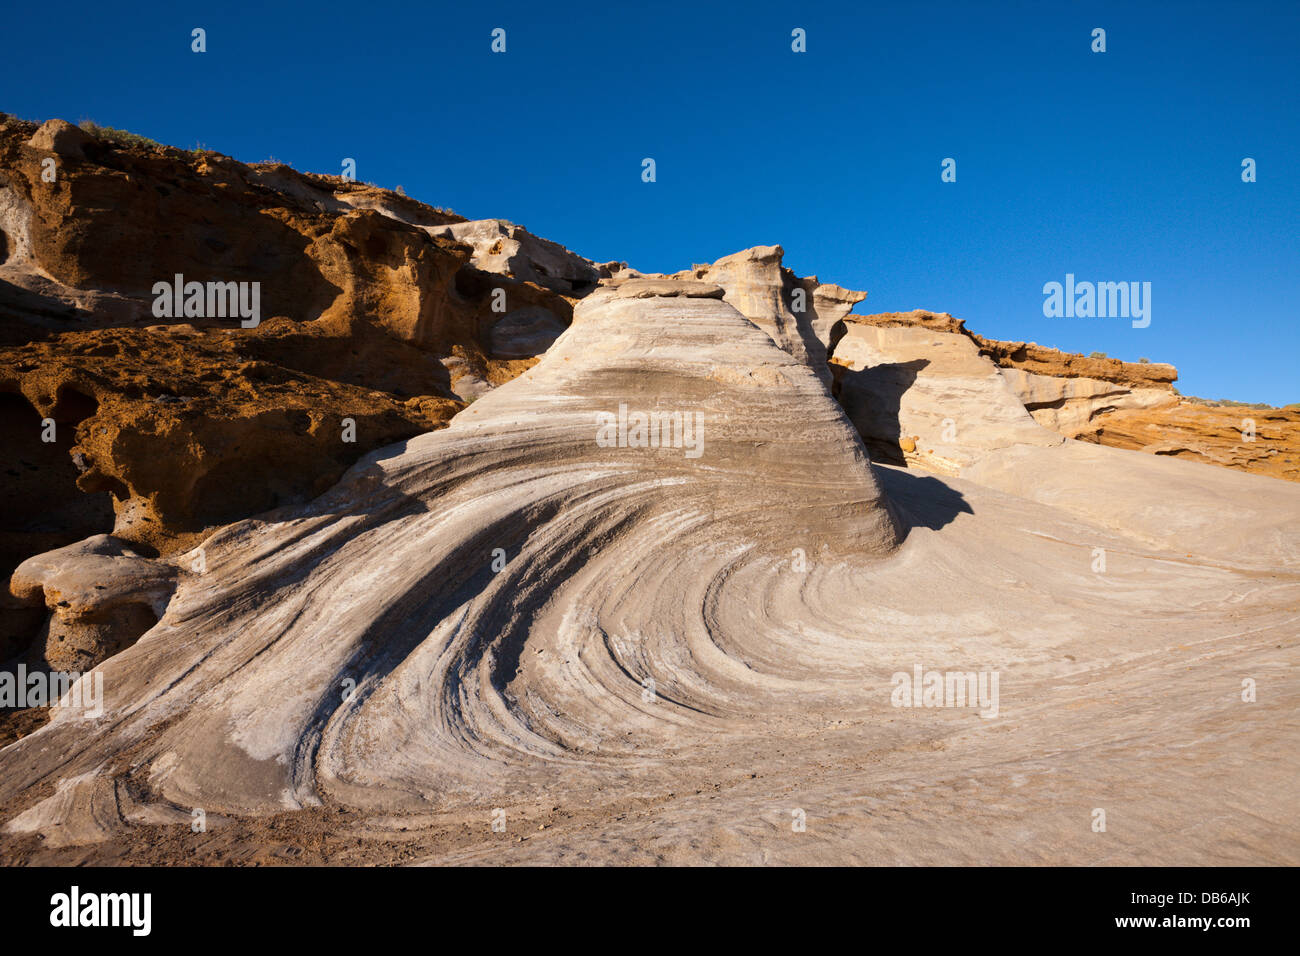 Pietrificate dune vicino a Costa del Silencio, Tenerife, Isole Canarie, Spagna Foto Stock